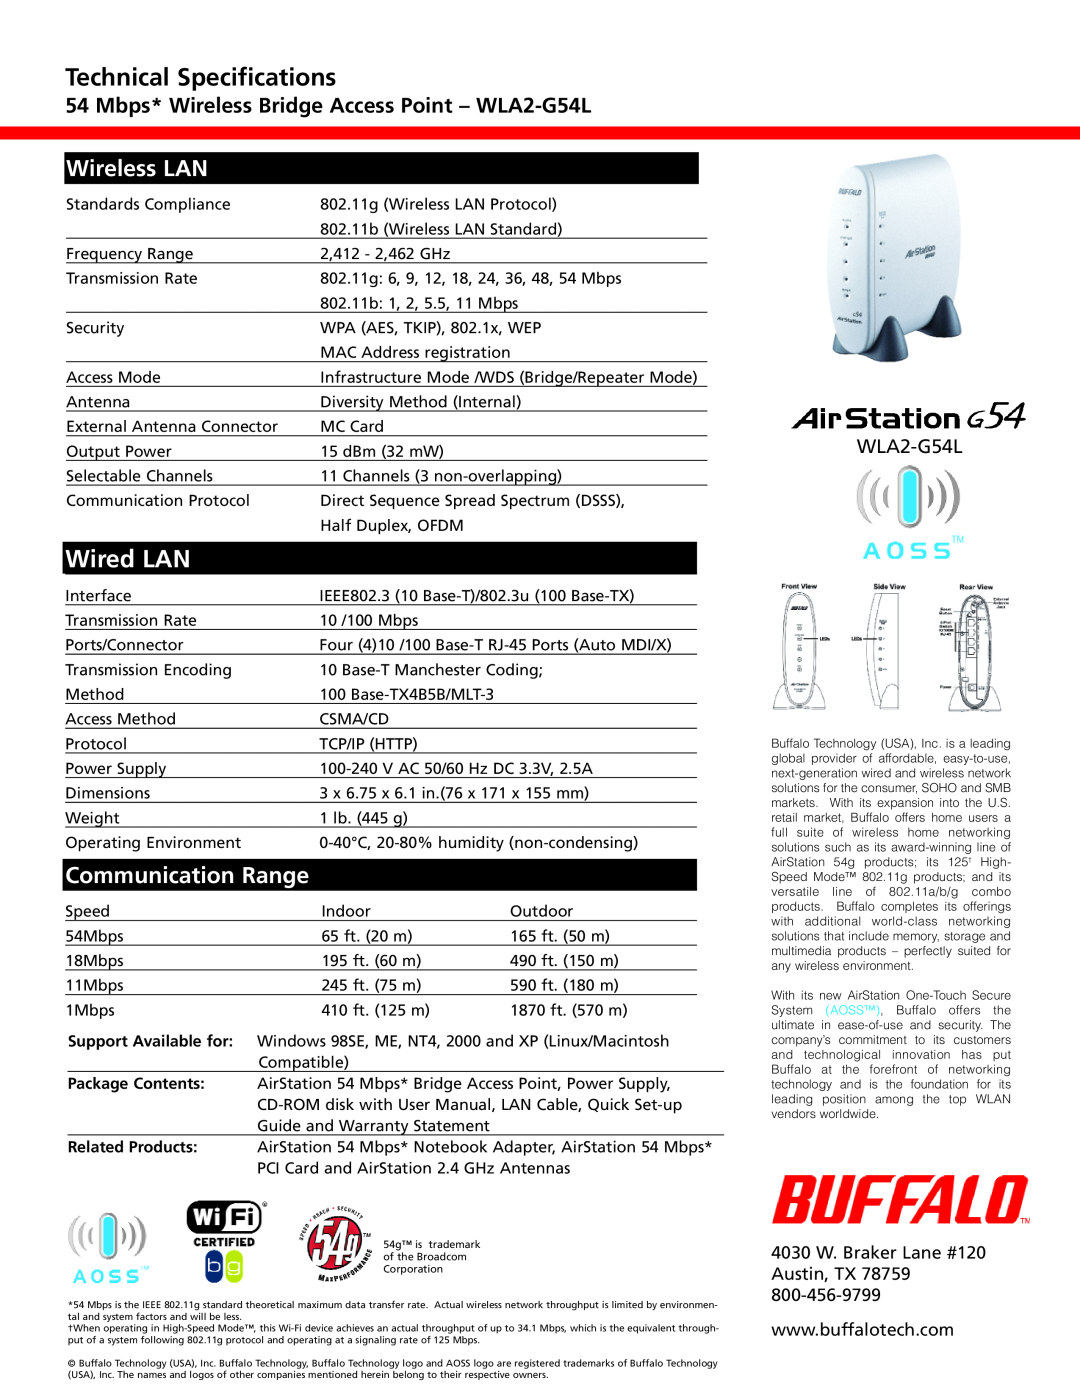 Buffalo Technology WLA2-G54L warranty Technical Specifications, Wired LAN, Wireless LAN, Communication Range 